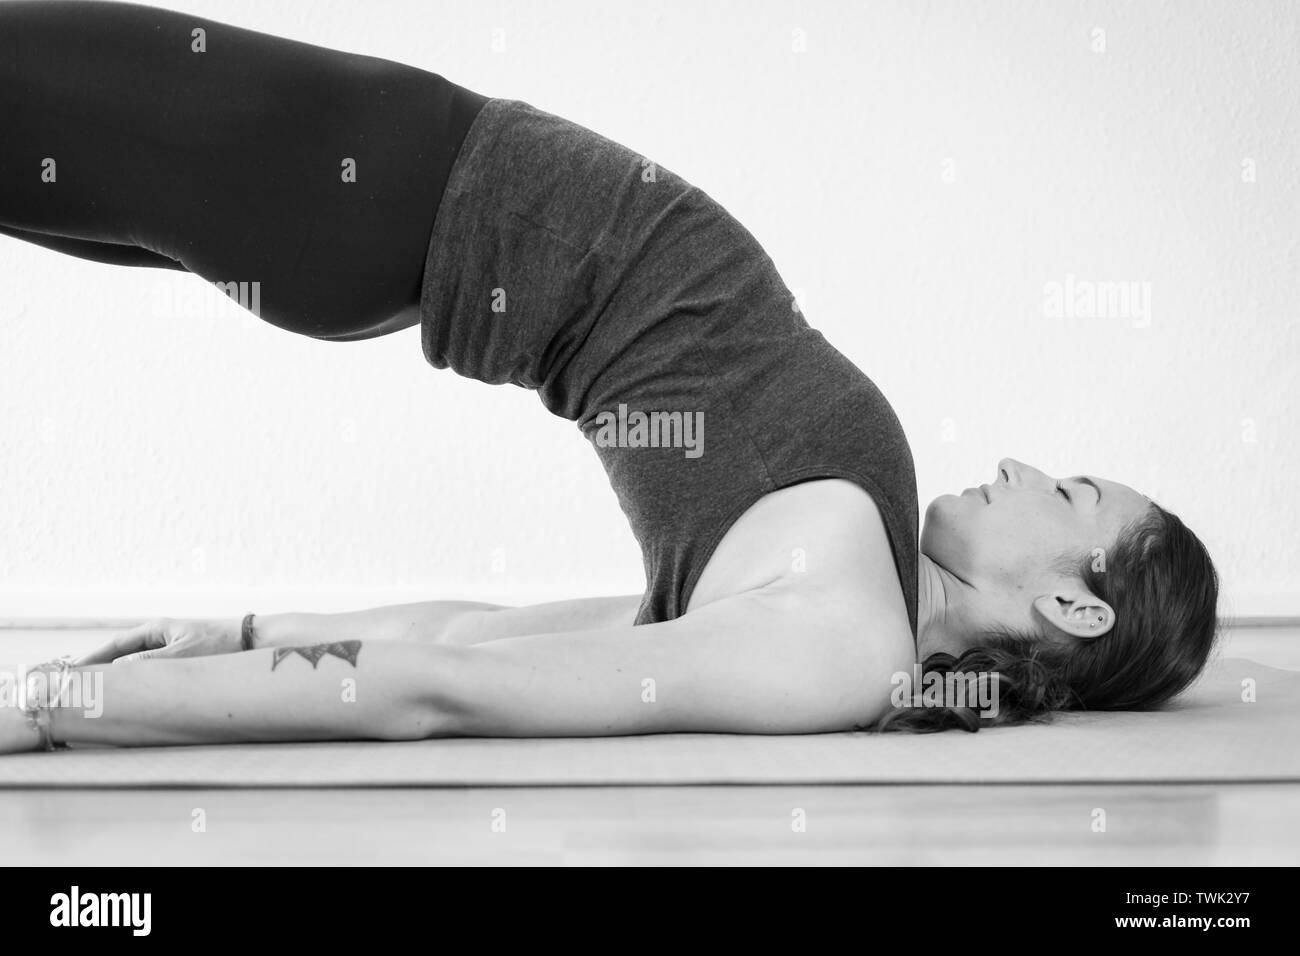 Icono plano hombre postura yoga gris y blanco Stock Vector